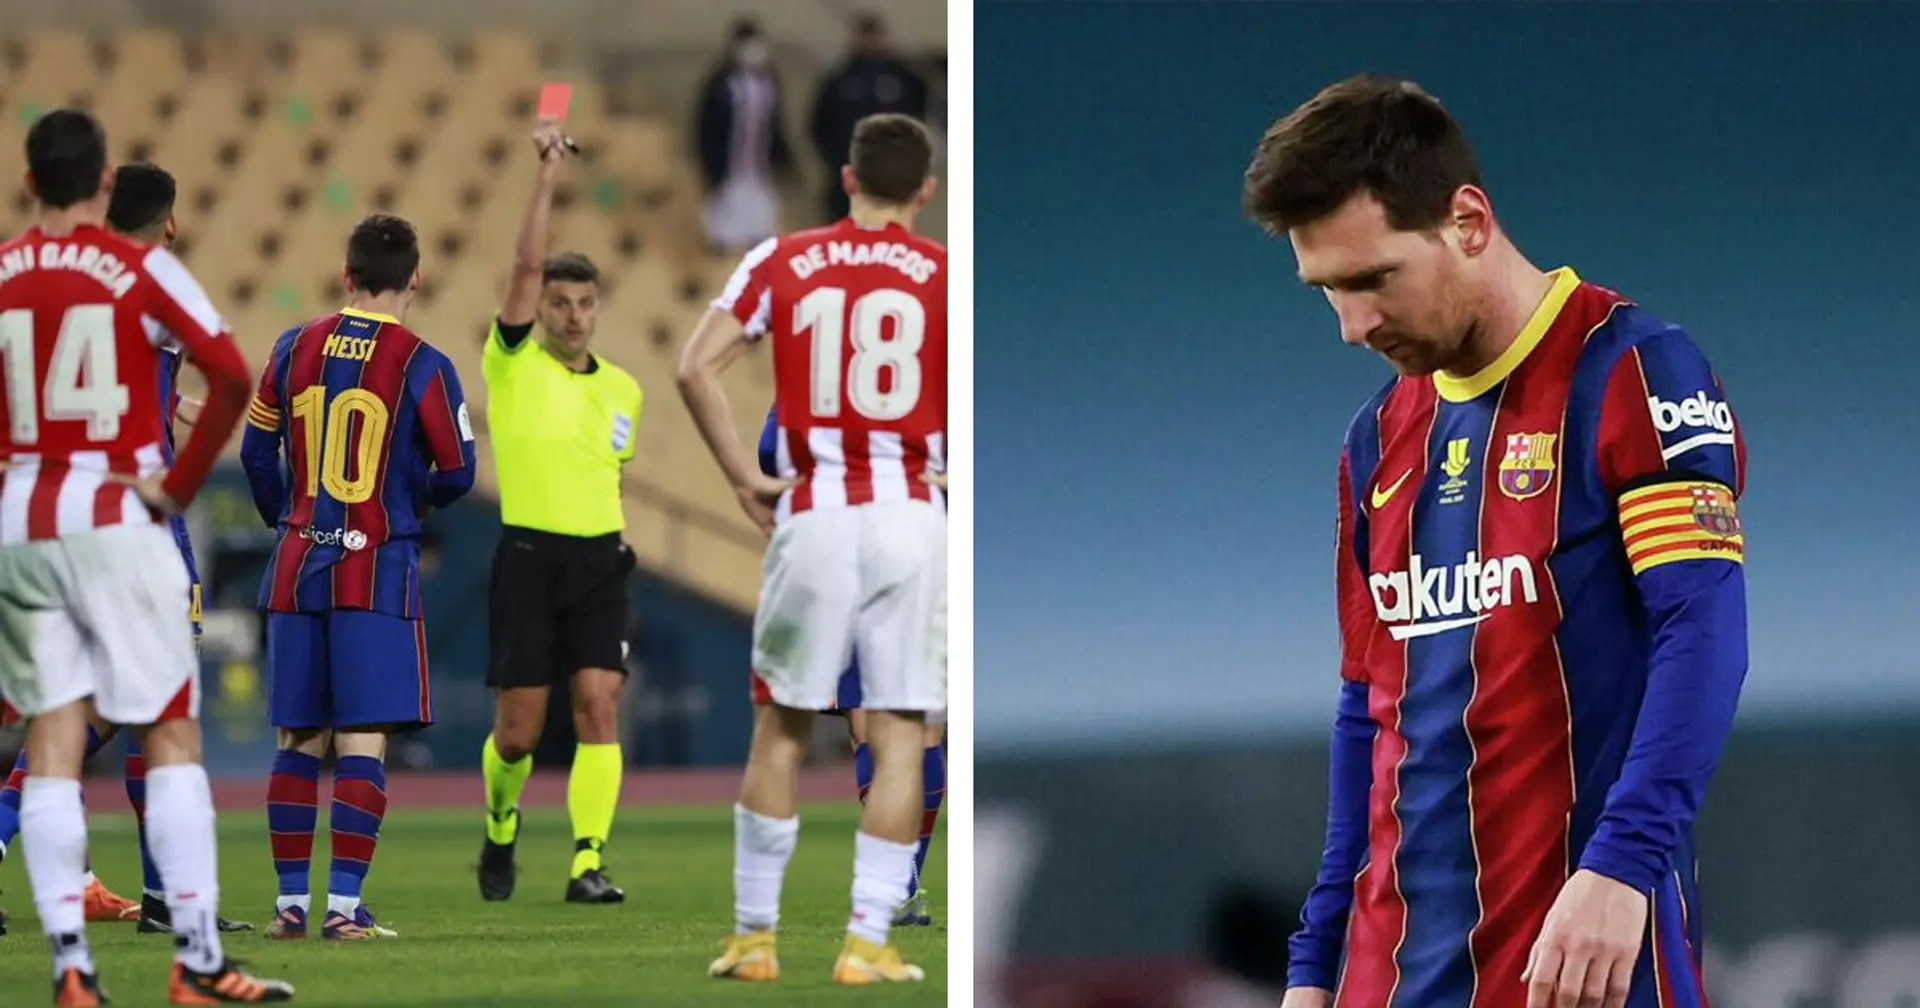 Leo Messi ratera le match face à Elche, l'appel de Barcelone sur l'interdiction de 2 matchs a été rejeté: RAC1